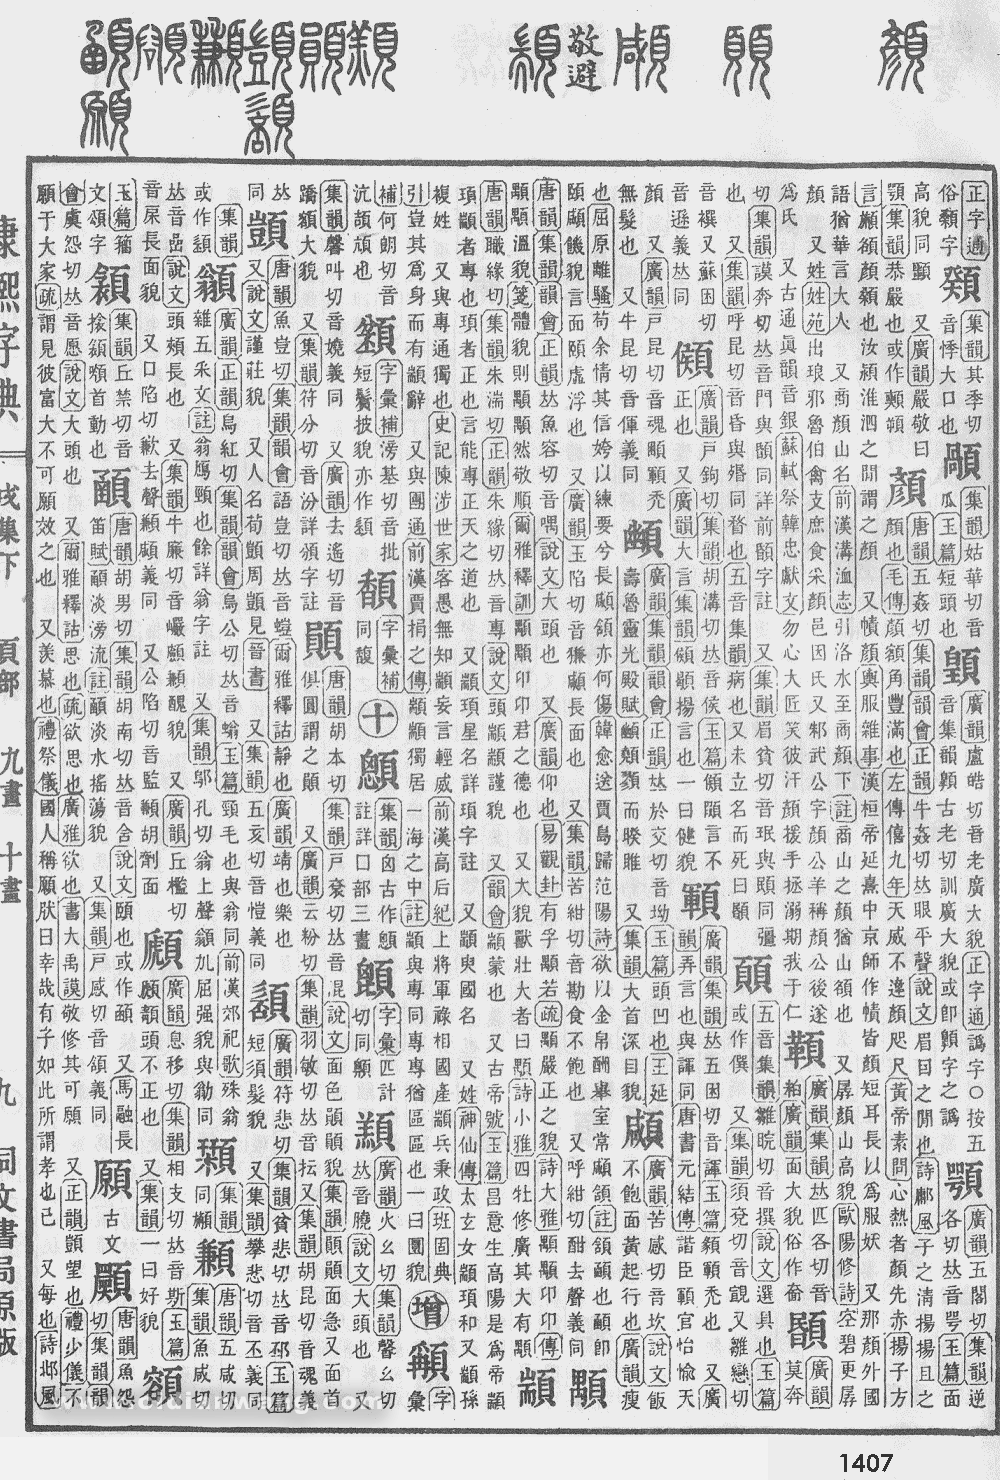 康熙字典掃描版第1407頁